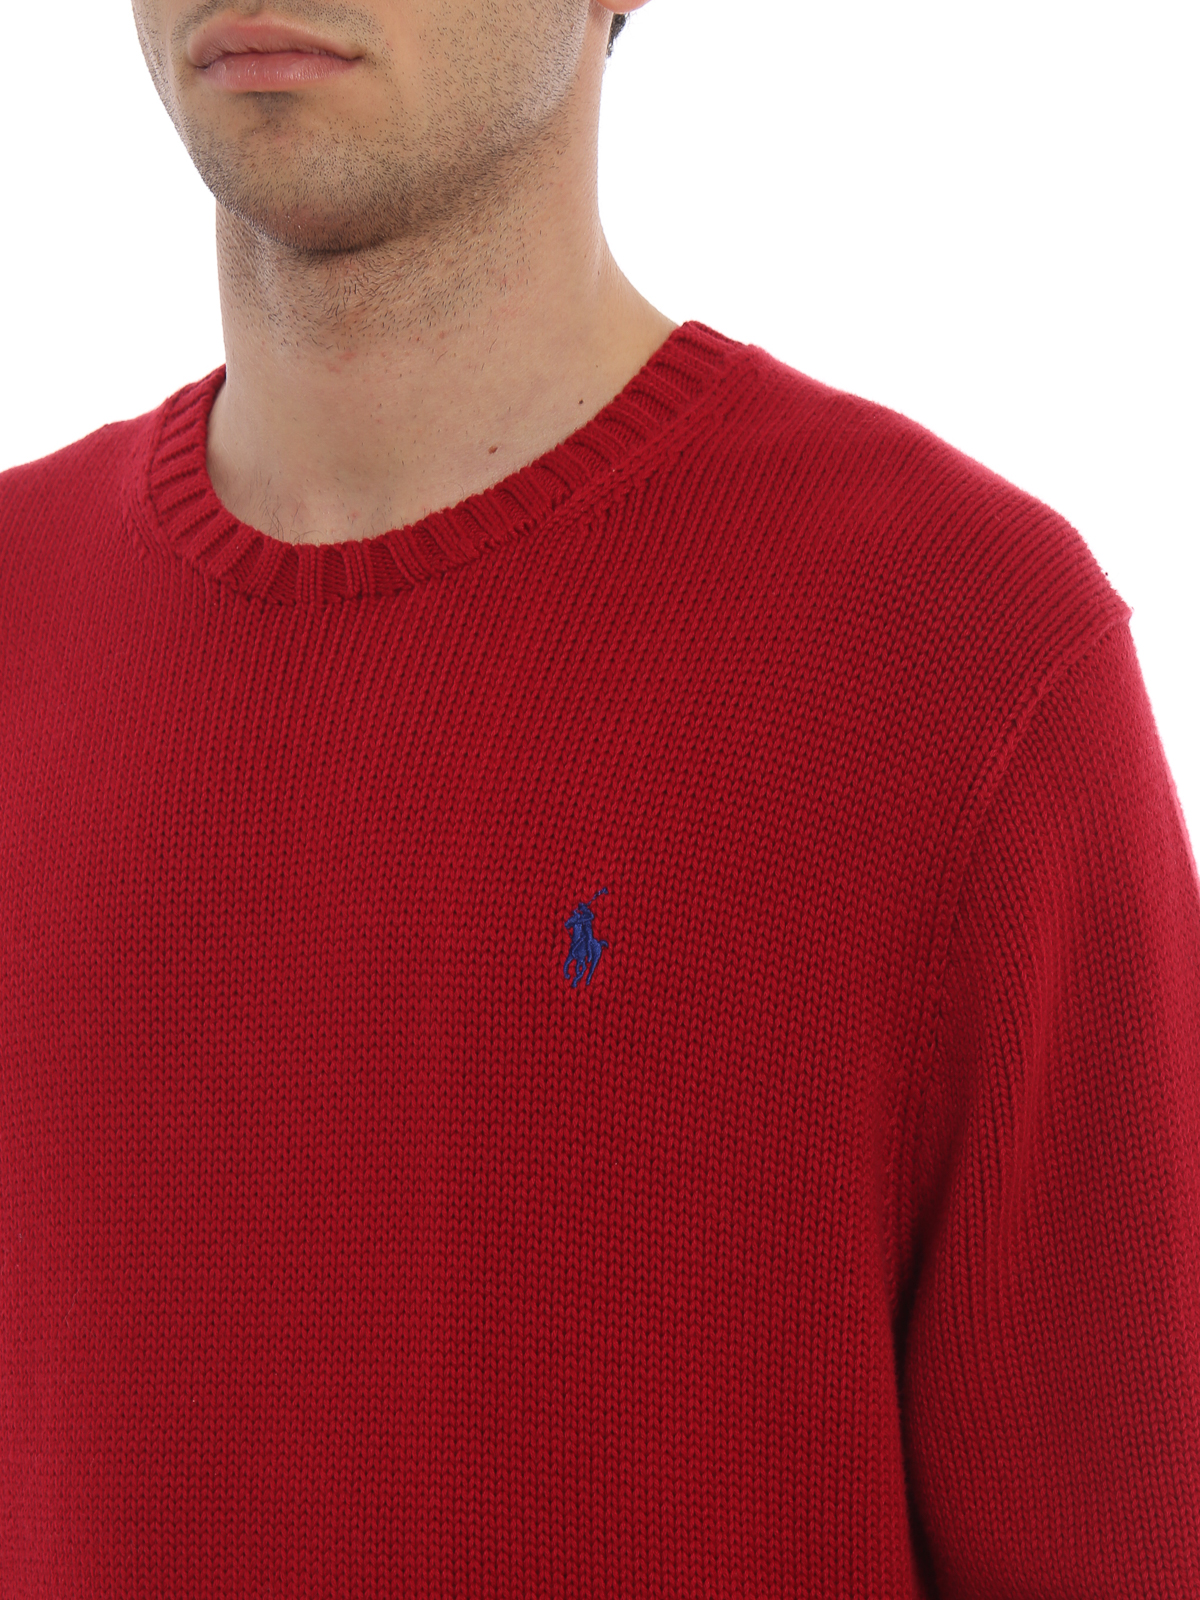 polo crew neck sweater